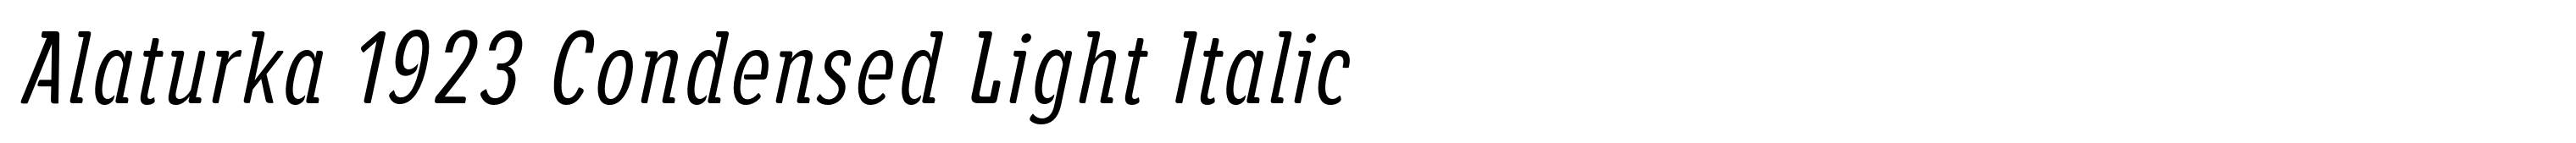 Alaturka 1923 Condensed Light Italic